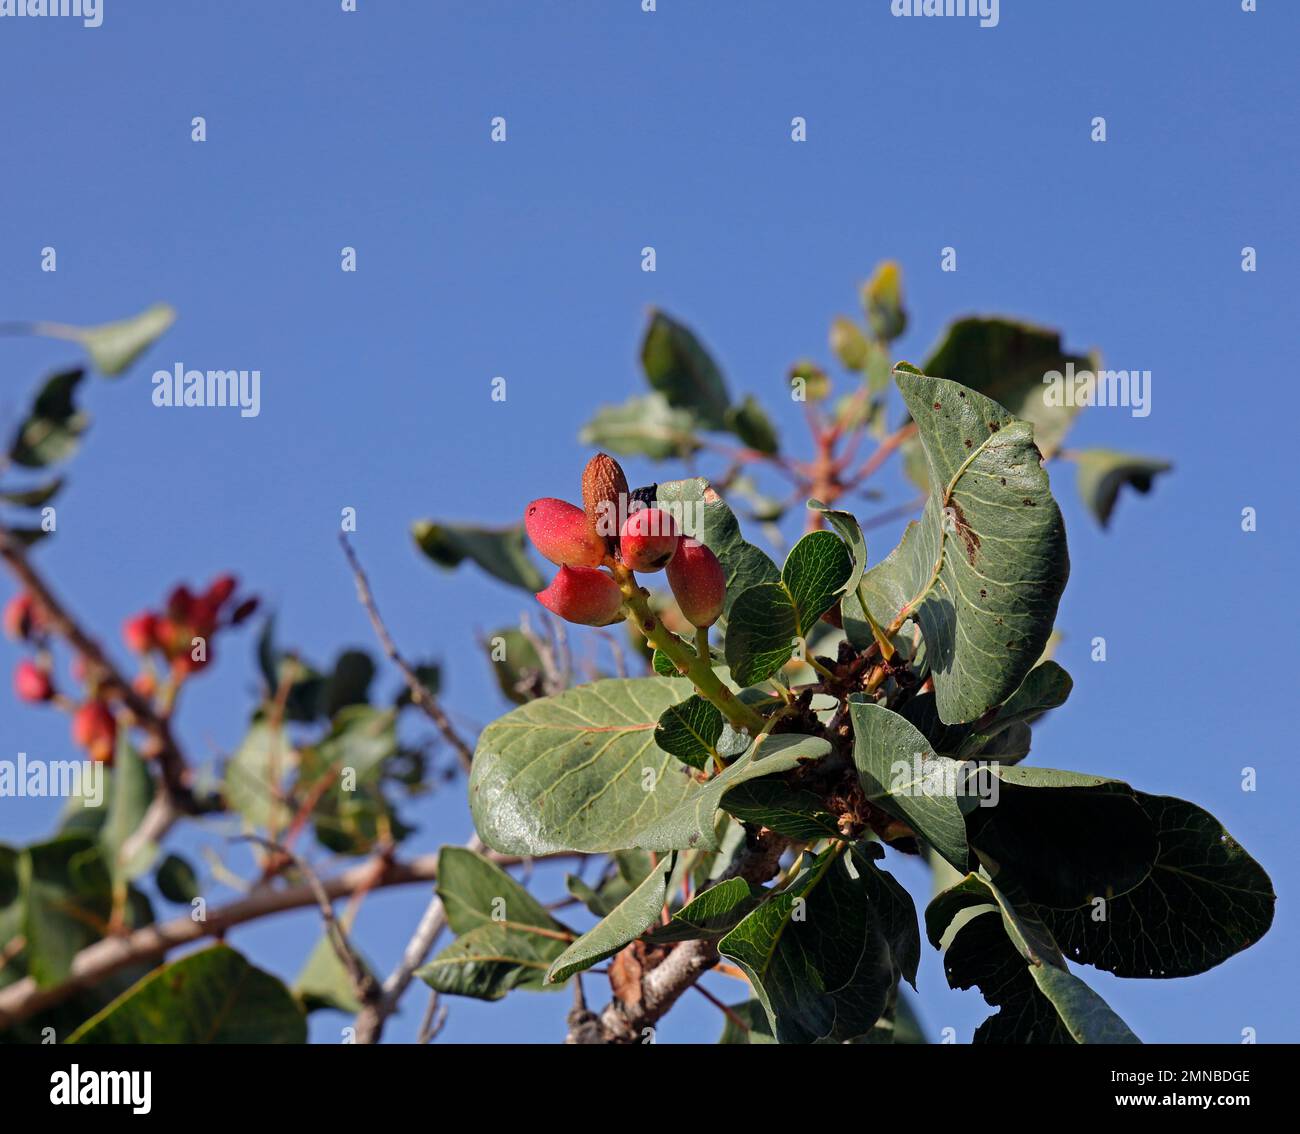 Pistaches cultivées mûrissant sur l'arbre contre le ciel bleu, île de Lesbos septembre / octobre 2022.Pistacia vera, famille de noix de cajou Banque D'Images